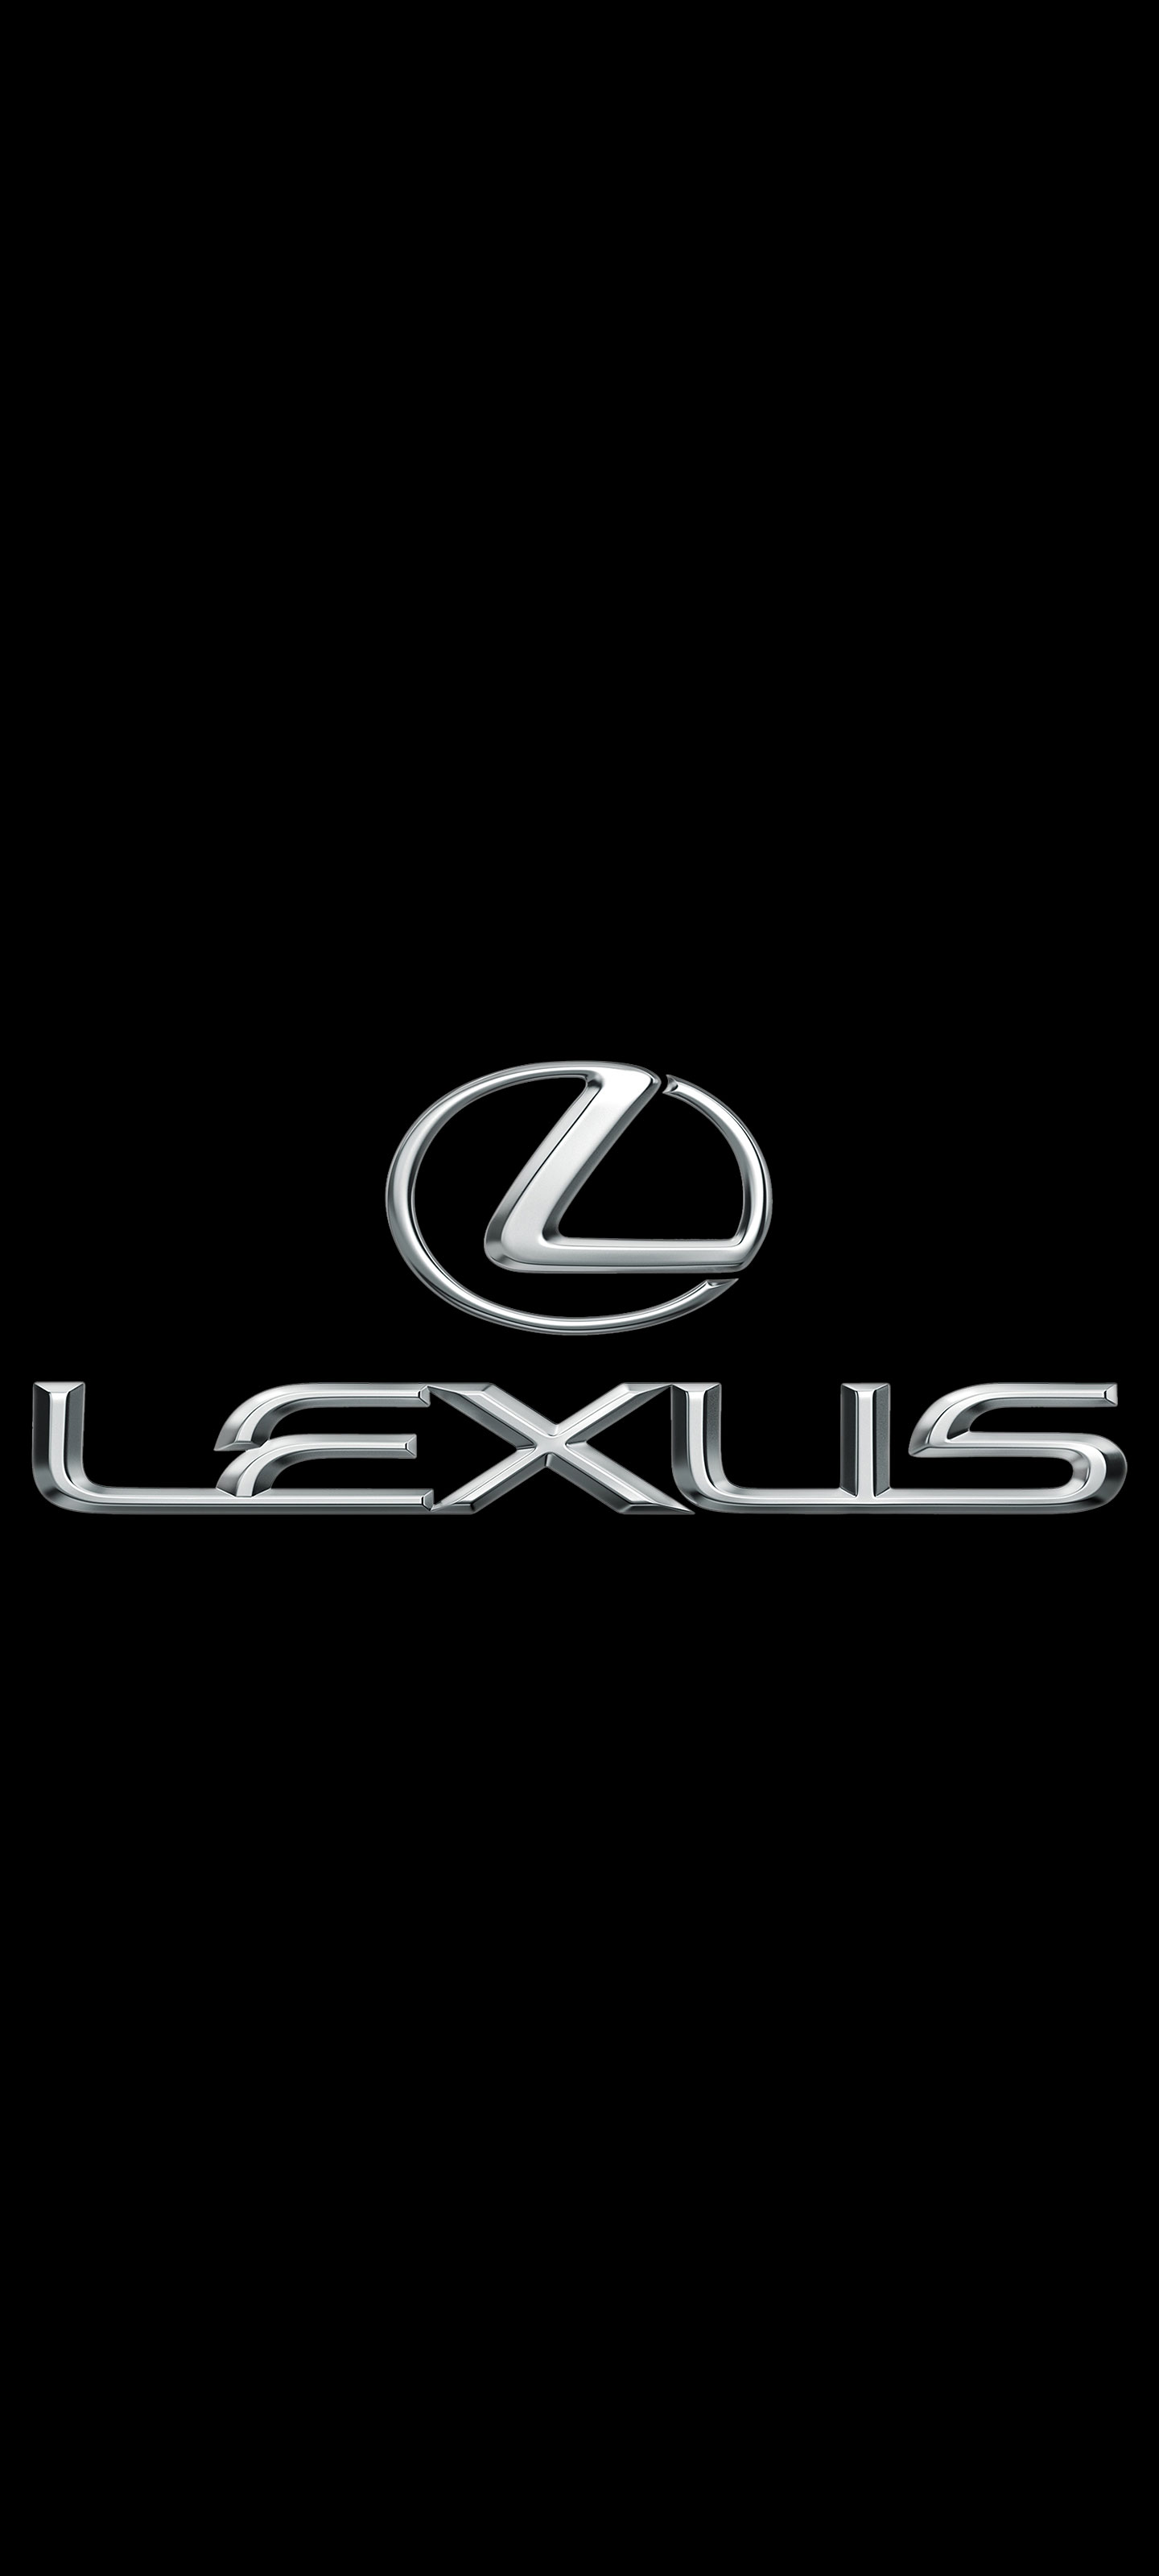 レクサス Lexus ロゴ の無料待ち受け画像 スマホ壁紙 Iphone Android 1 待ち受けparadise